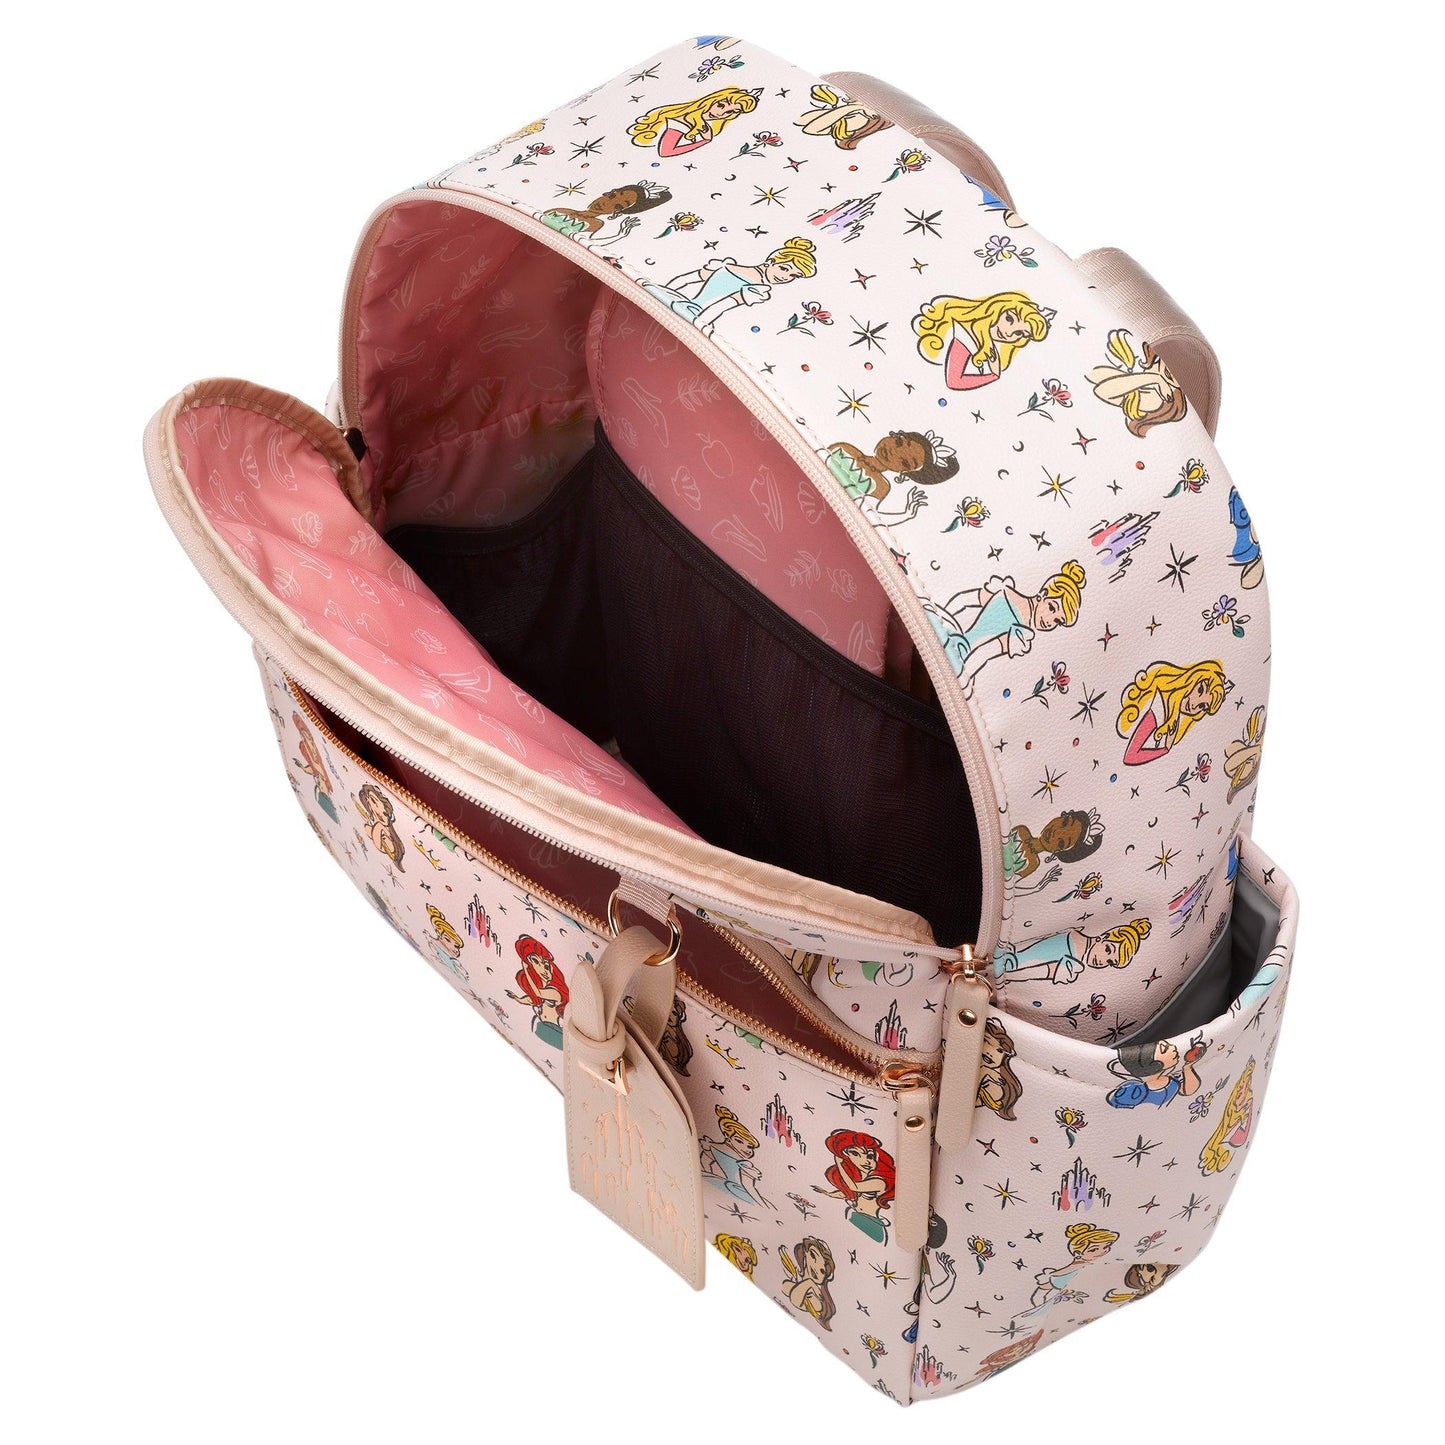 Petunia Pickle Bottom Ace Backpack Diaper Bag in Disney Princess